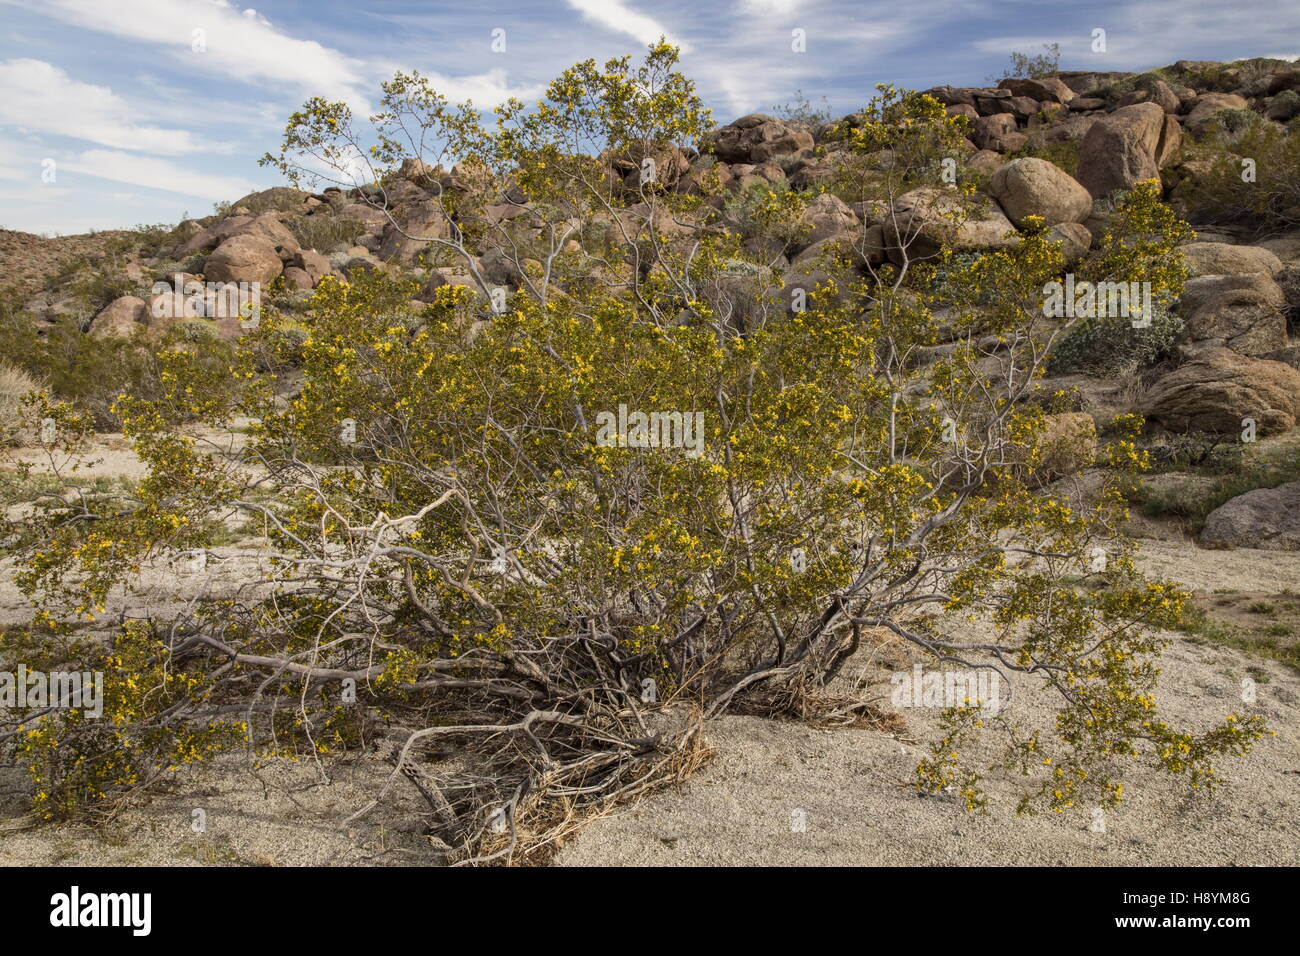 Creosote bush, Larrea tridentata en fleur dans le désert californien. Anza-Borrego Desert State Park, désert de Sonora, en Californie Banque D'Images